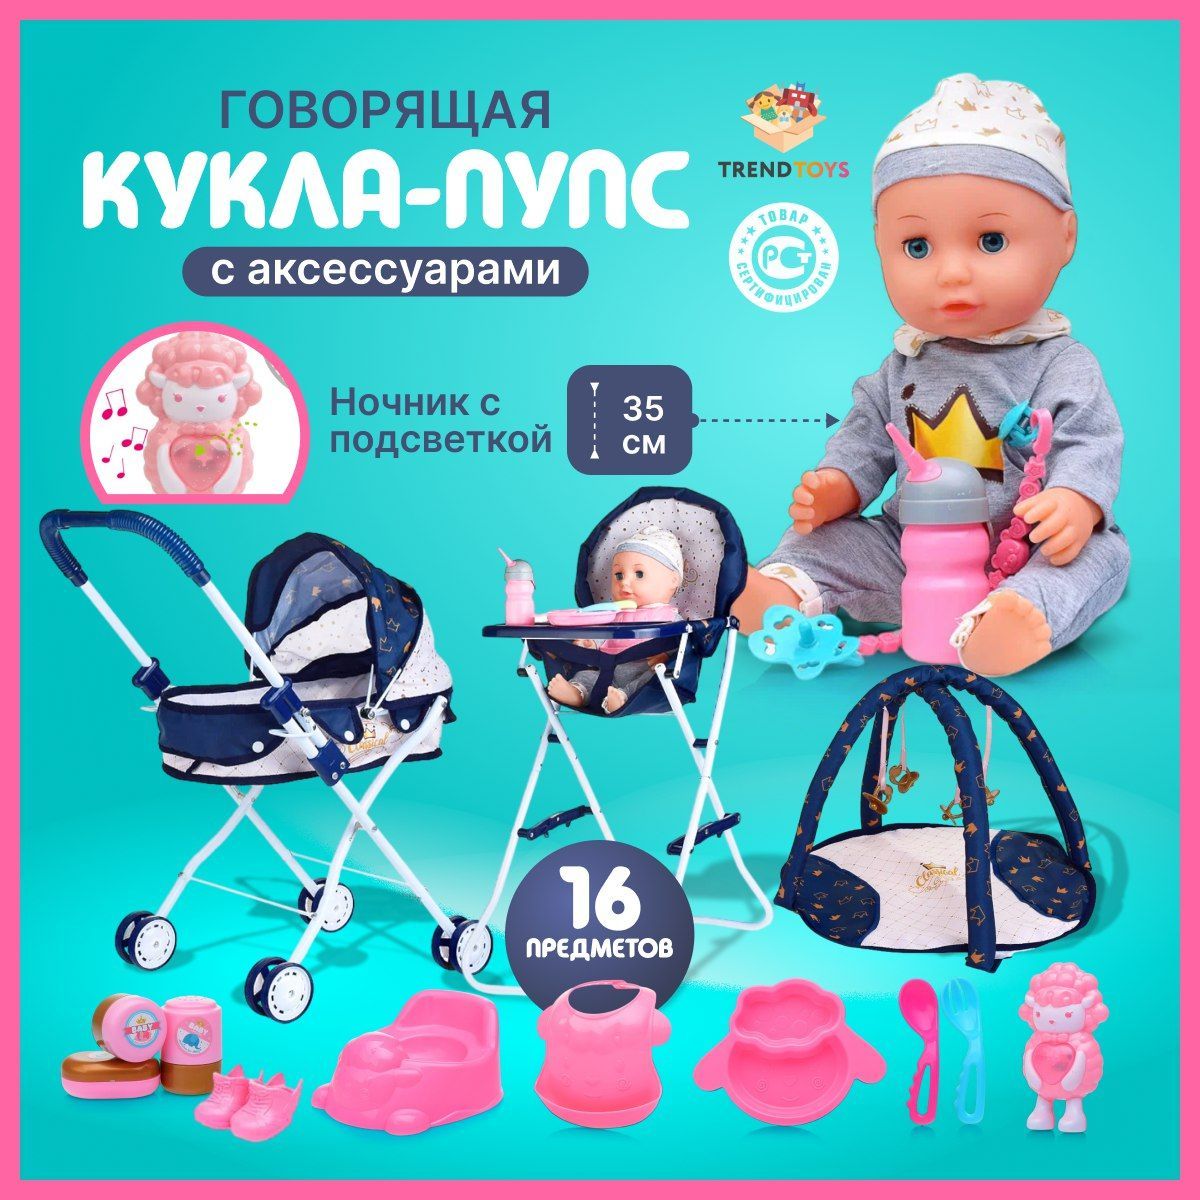 Игровой набор кукол «Пупсы для ванной», отзывы, фото – купить в интернет-магазине в Москве